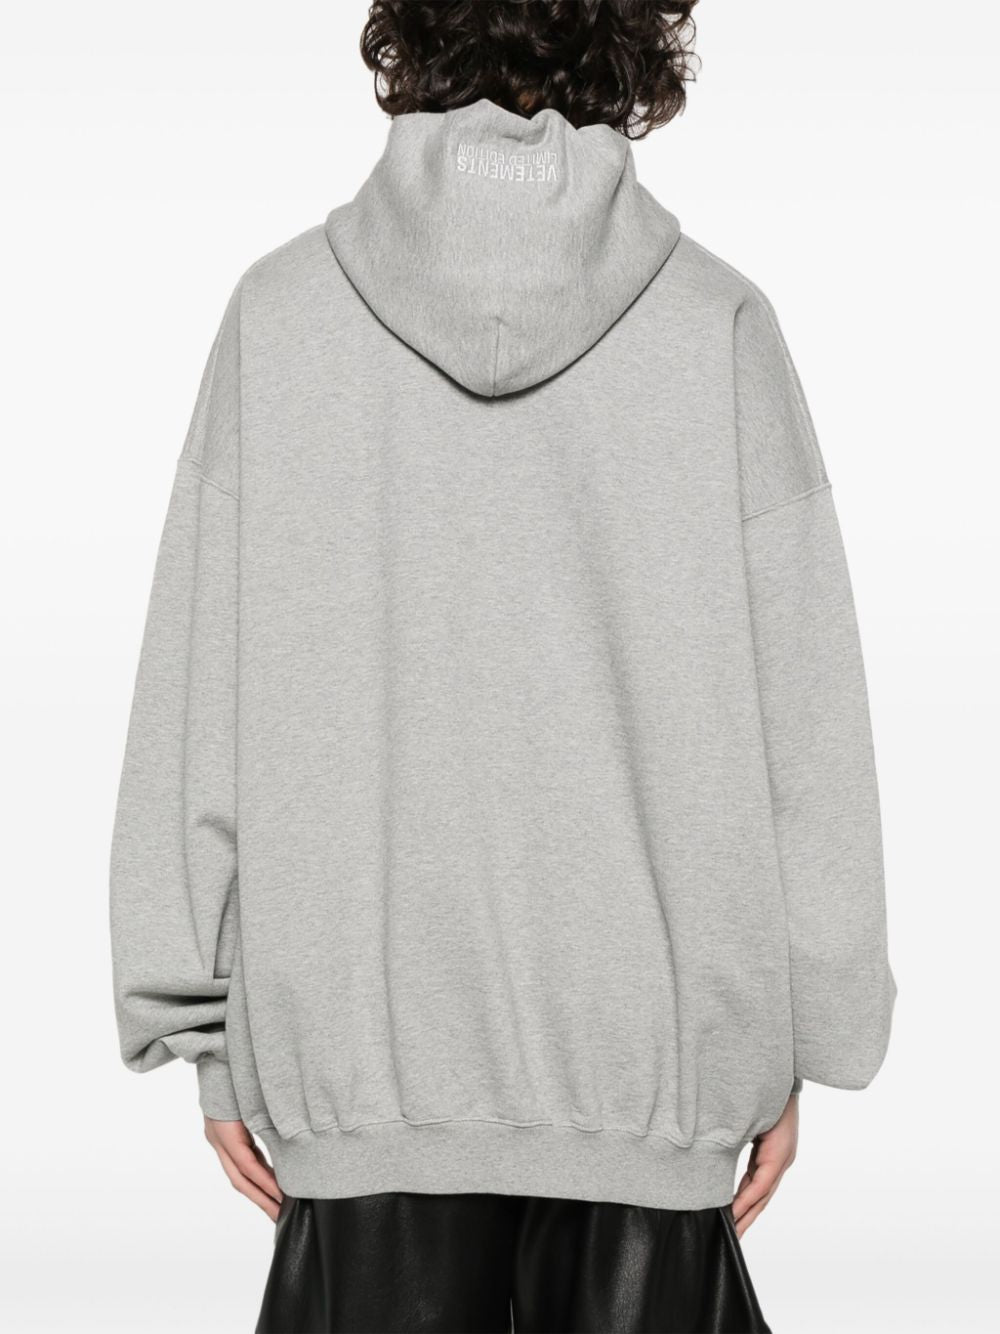 Áo hoodie lông cừu màu xám nhạt với hình thêu logo và lớp lót len Pháp